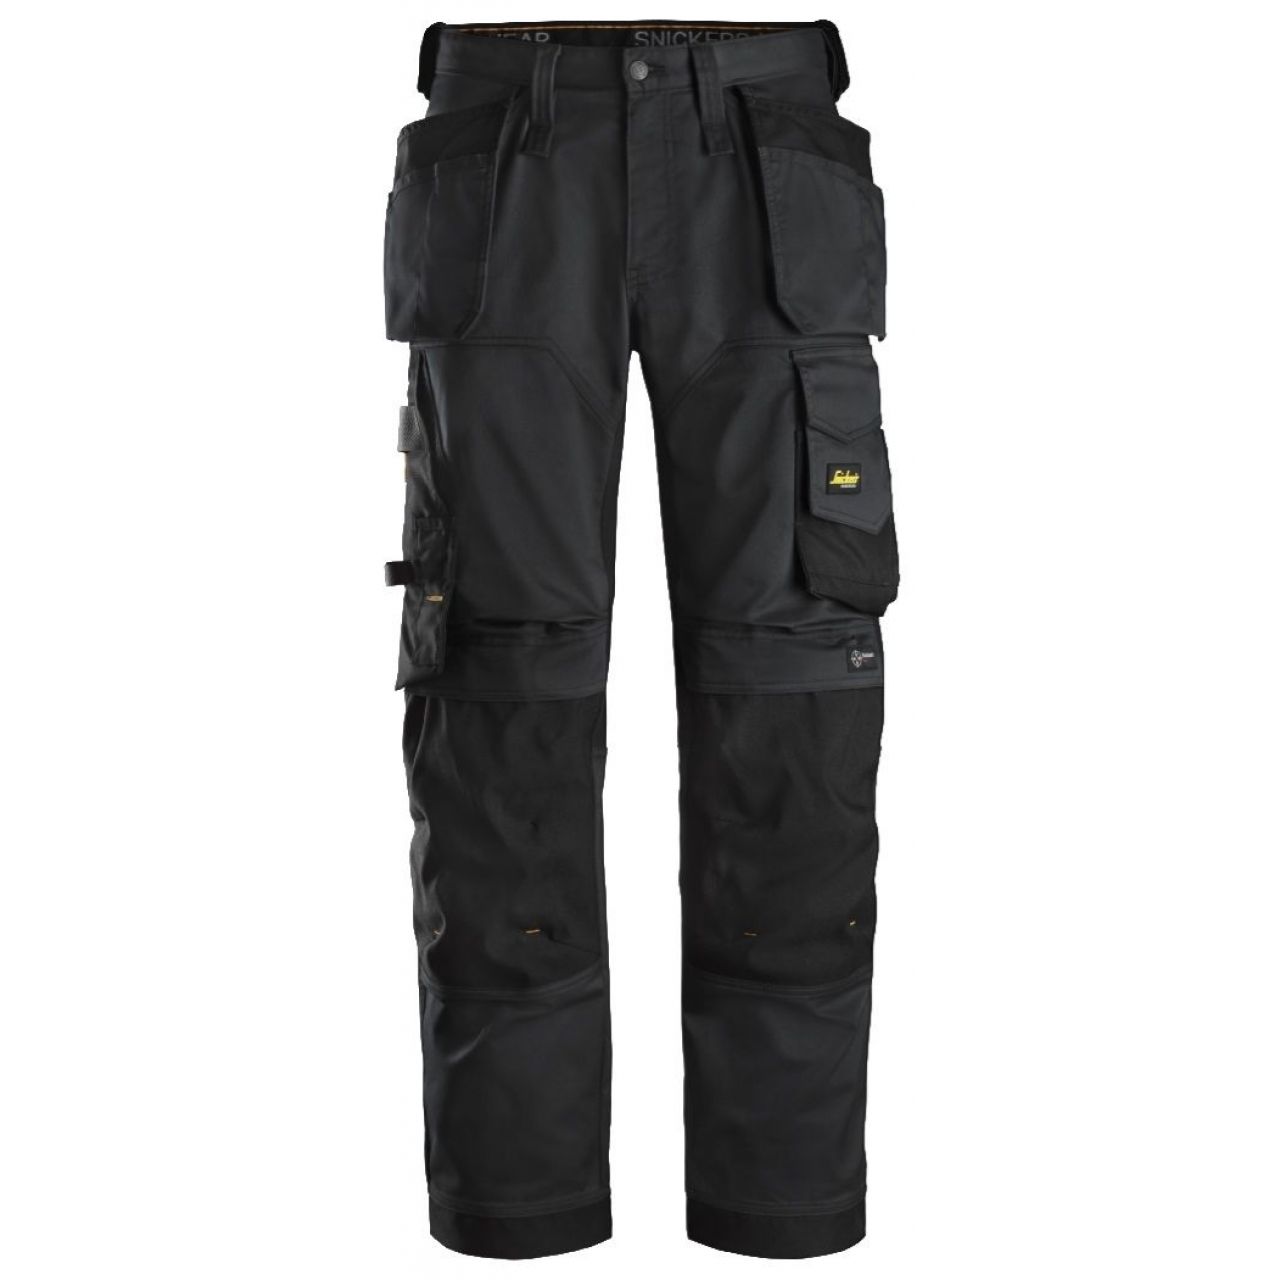 Pantalon elastico ajuste holgado AllroundWork bolsillos flotantes negro talla 062